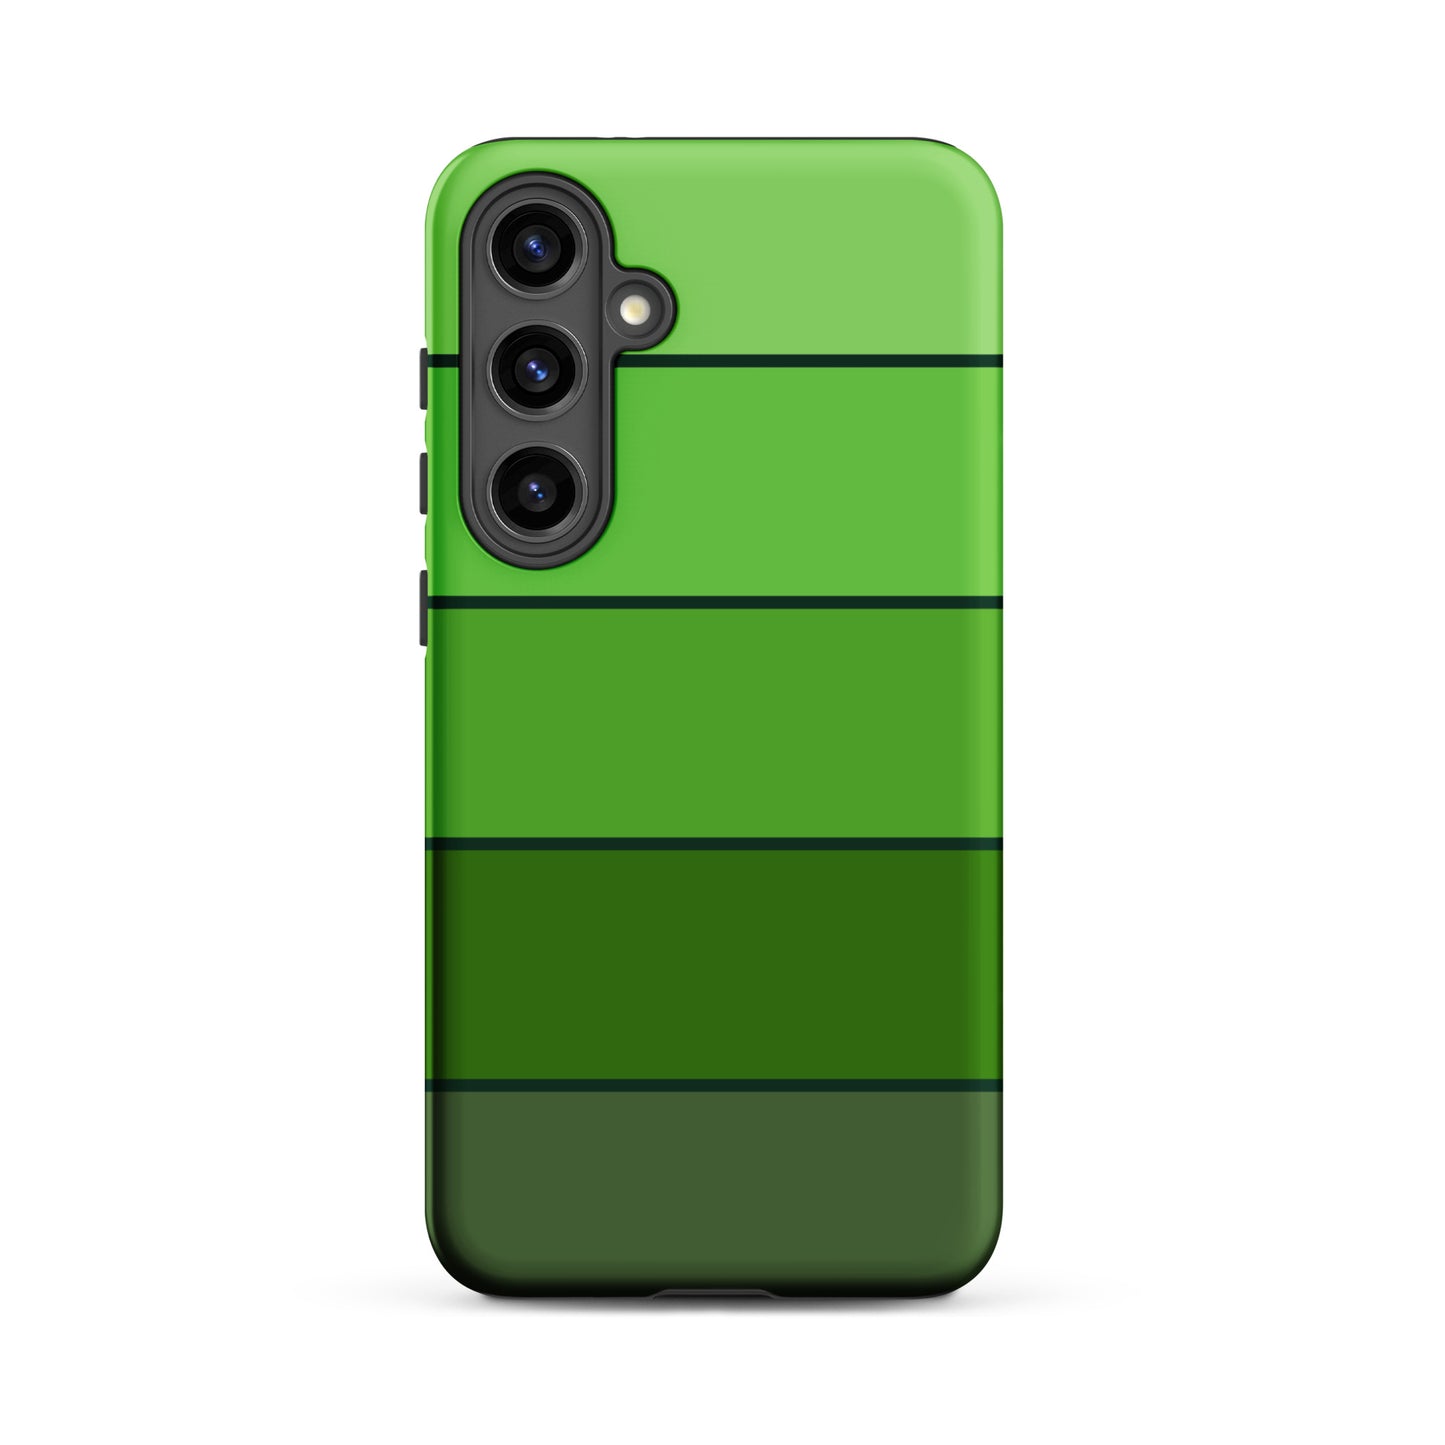 Lucky Green Ombre Samsung® Case